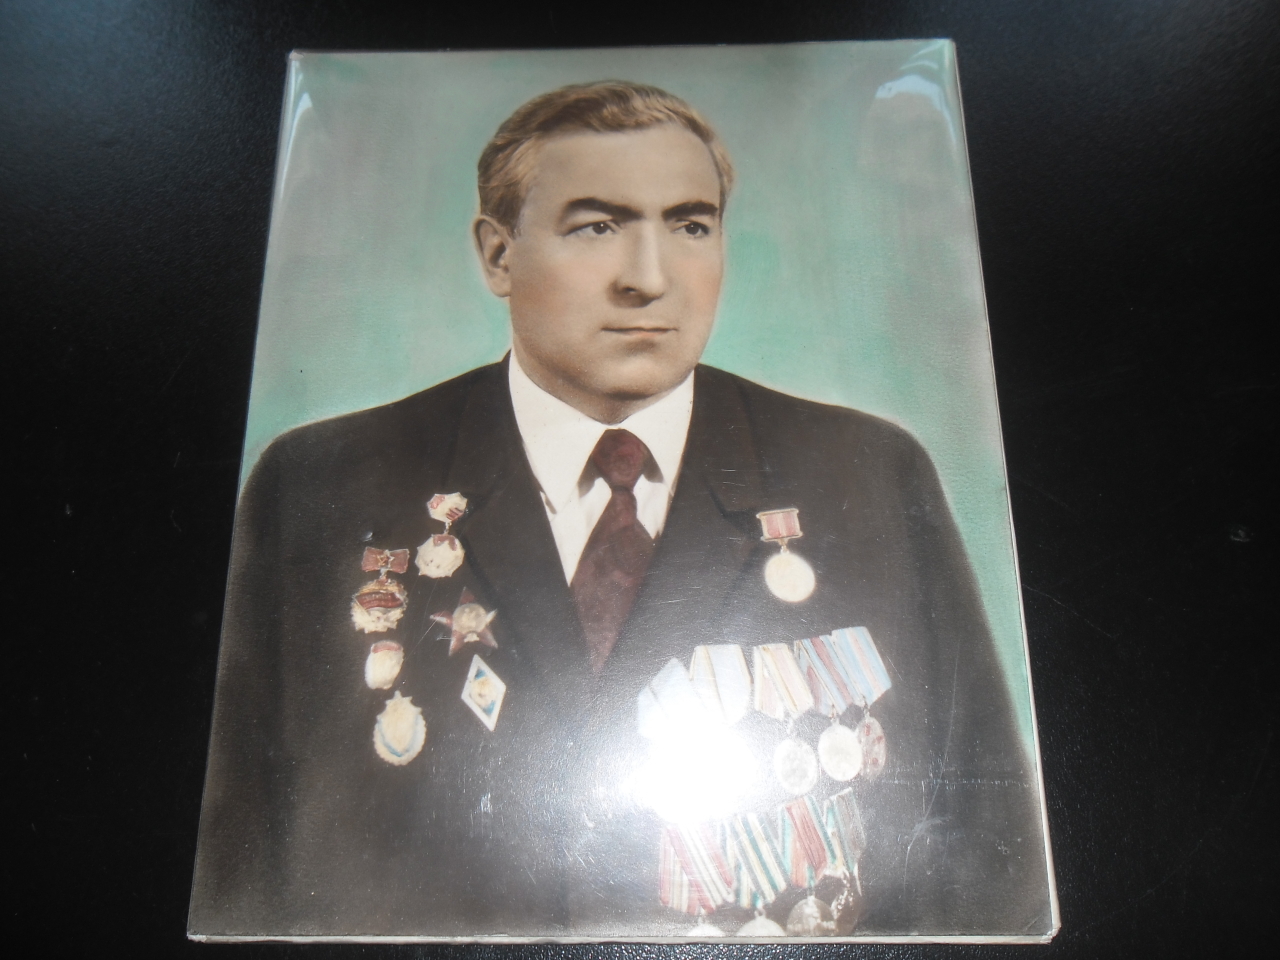 Լուսանկար՝ Հրաչիկ Արմենակի Ասոյանի (Հայրենական պատերազմի մասնակից)